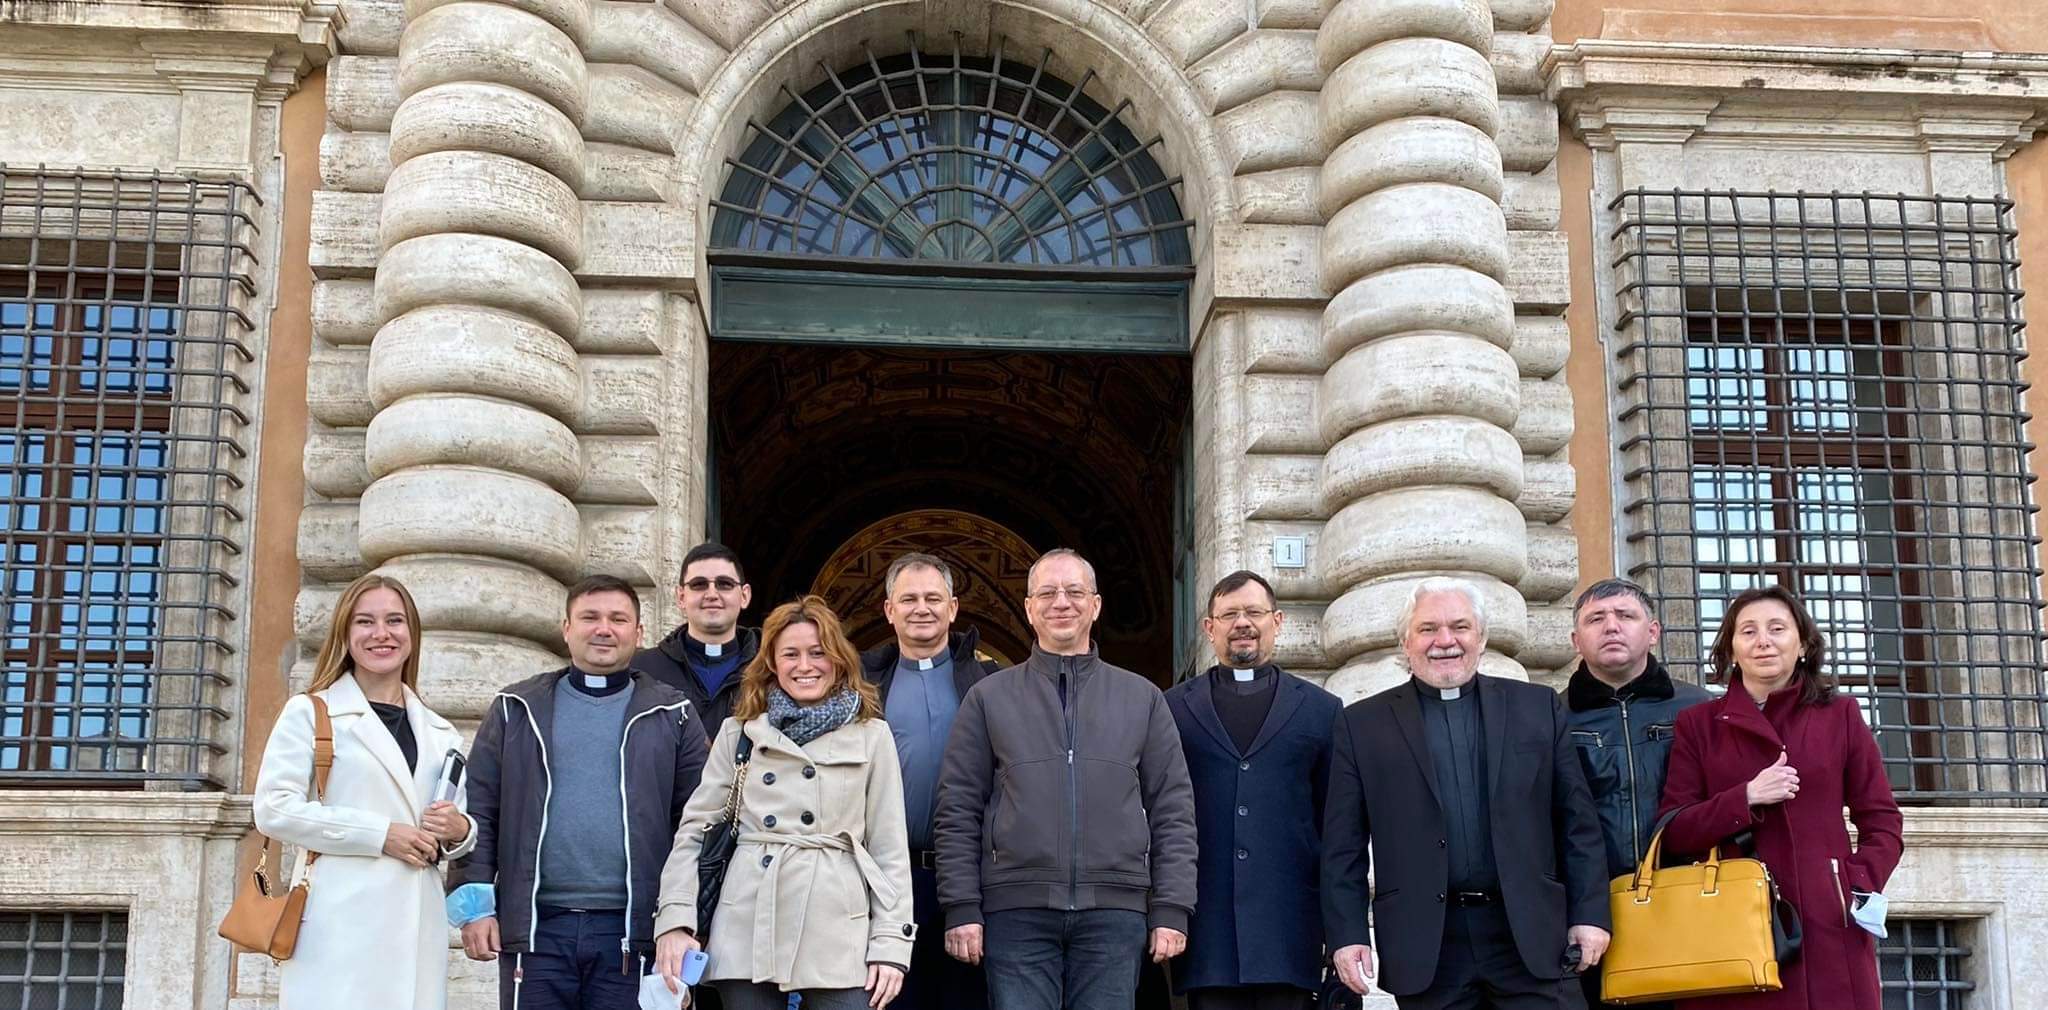 Il Supremo Tribunale della Segnatura Apostolica ha riconosciuto l’istituzione del Tribunale dell’Esarcato Apostolico in Italia